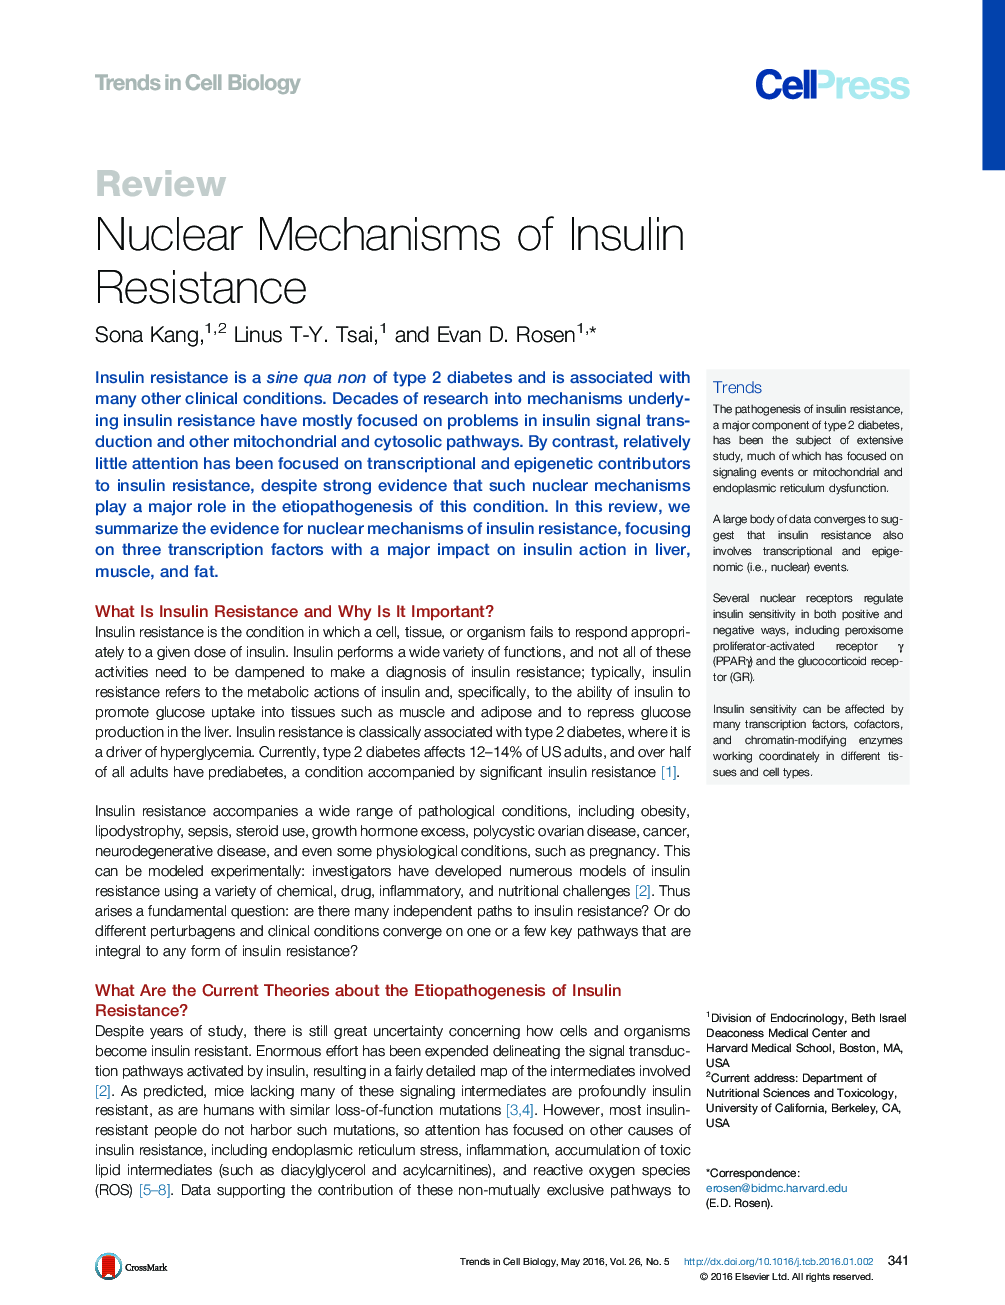 مکانیسم های هسته ای مقاومت به انسولین 